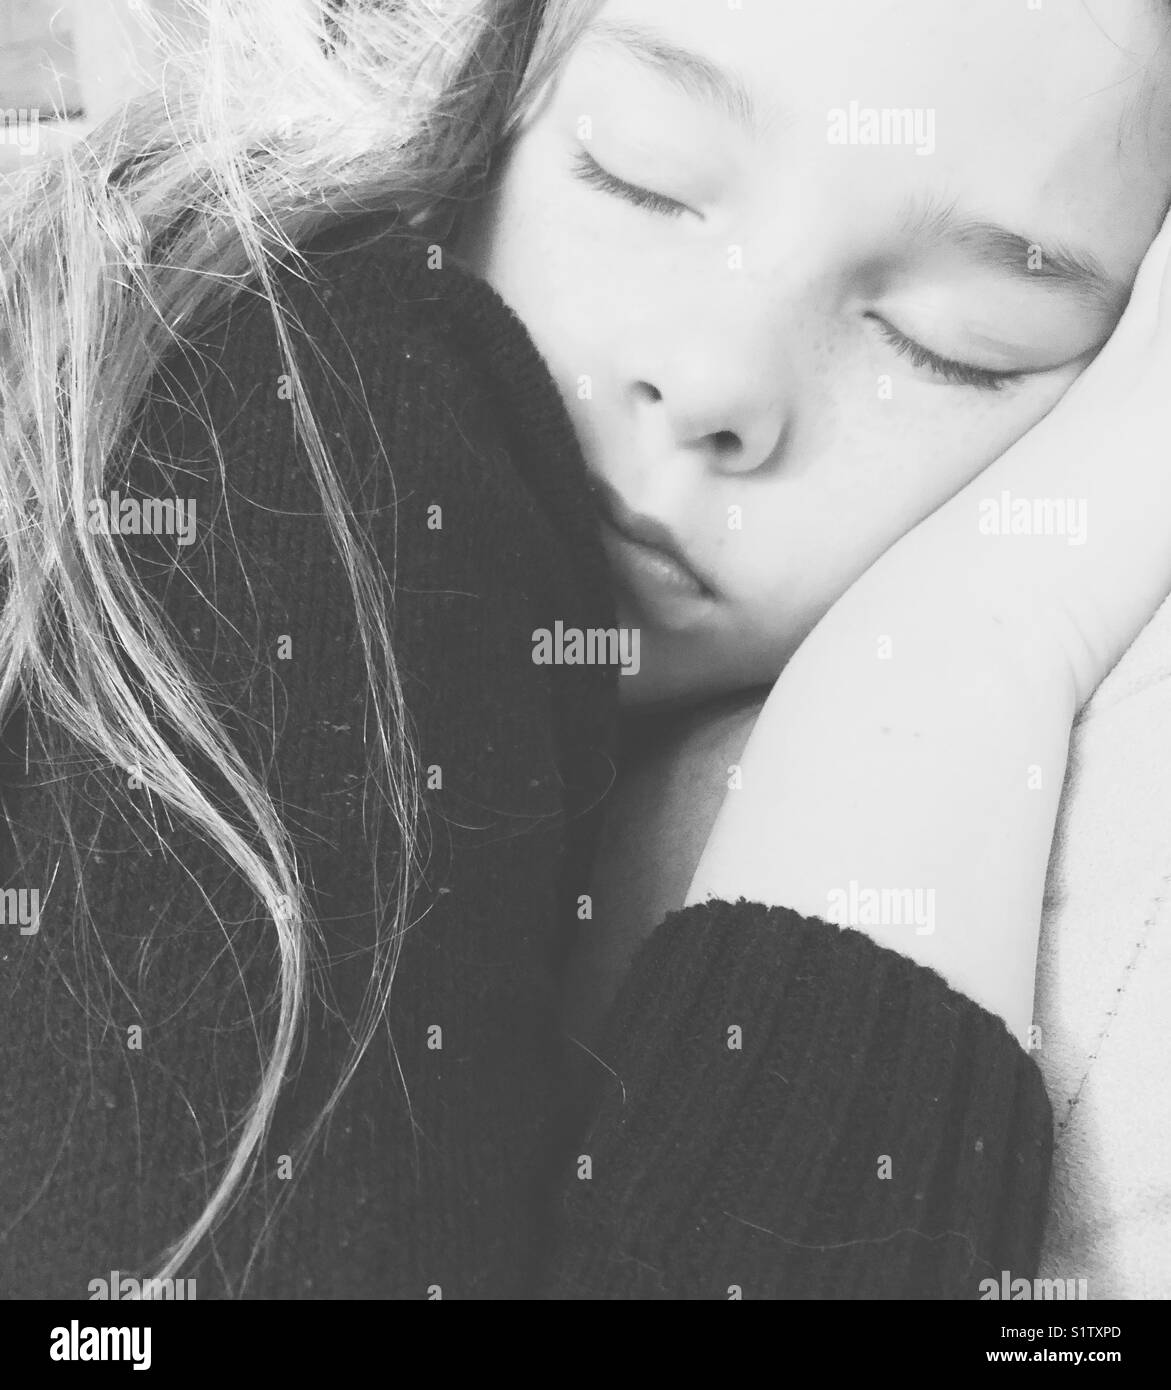 Monocromatico closeup immagine del sonno 10 anno vecchia ragazza con i capelli lunghi e la faccia a portata di mano Foto Stock